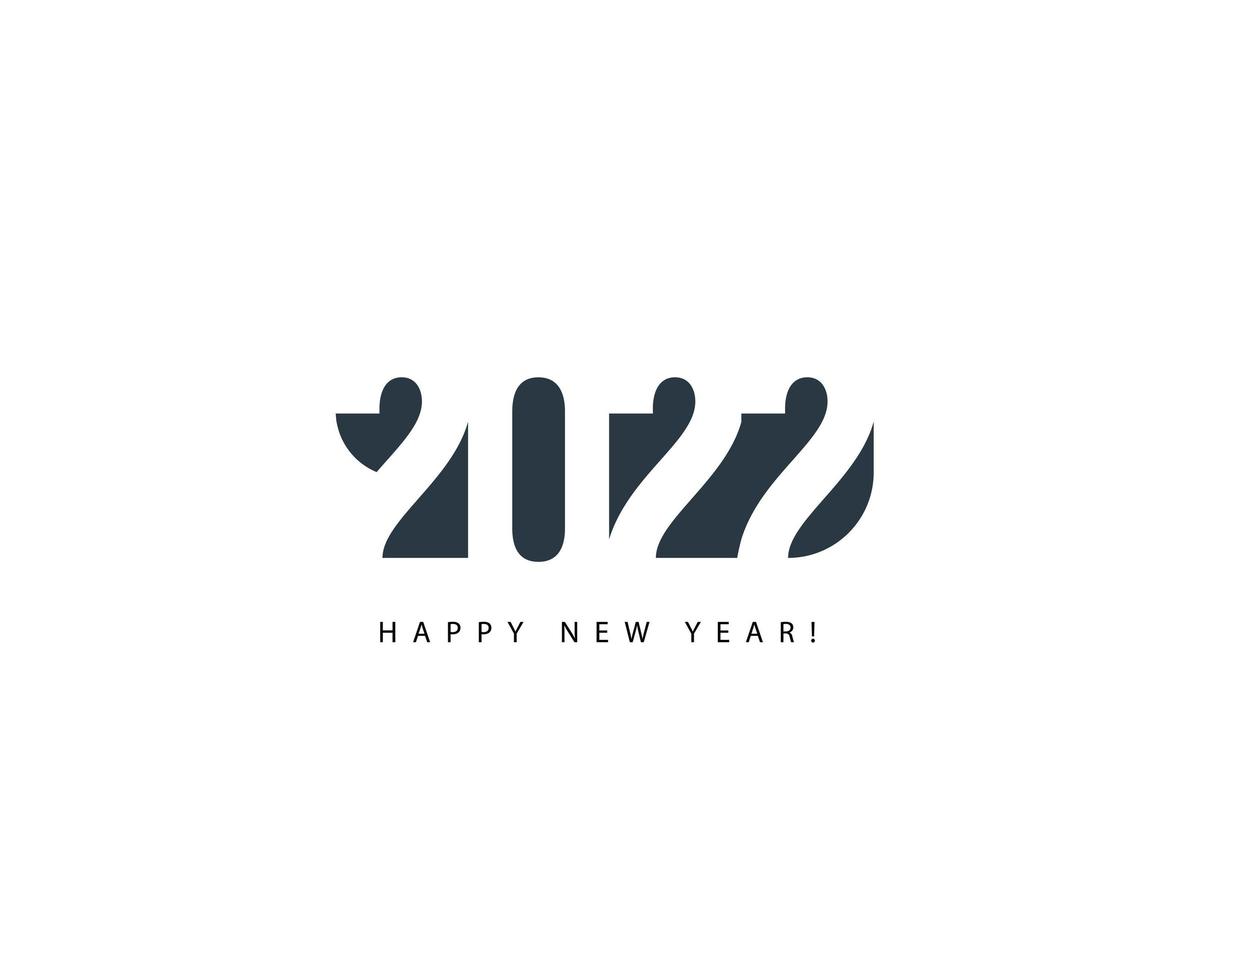 2022 abstrakt nummer för gratulationskort för gott nytt år, kreativ kalenderrubrik, elegant logotyp, festligt nyårsaffischkoncept, minimalistisk svart vektorillustration på vit bakgrund. vektor